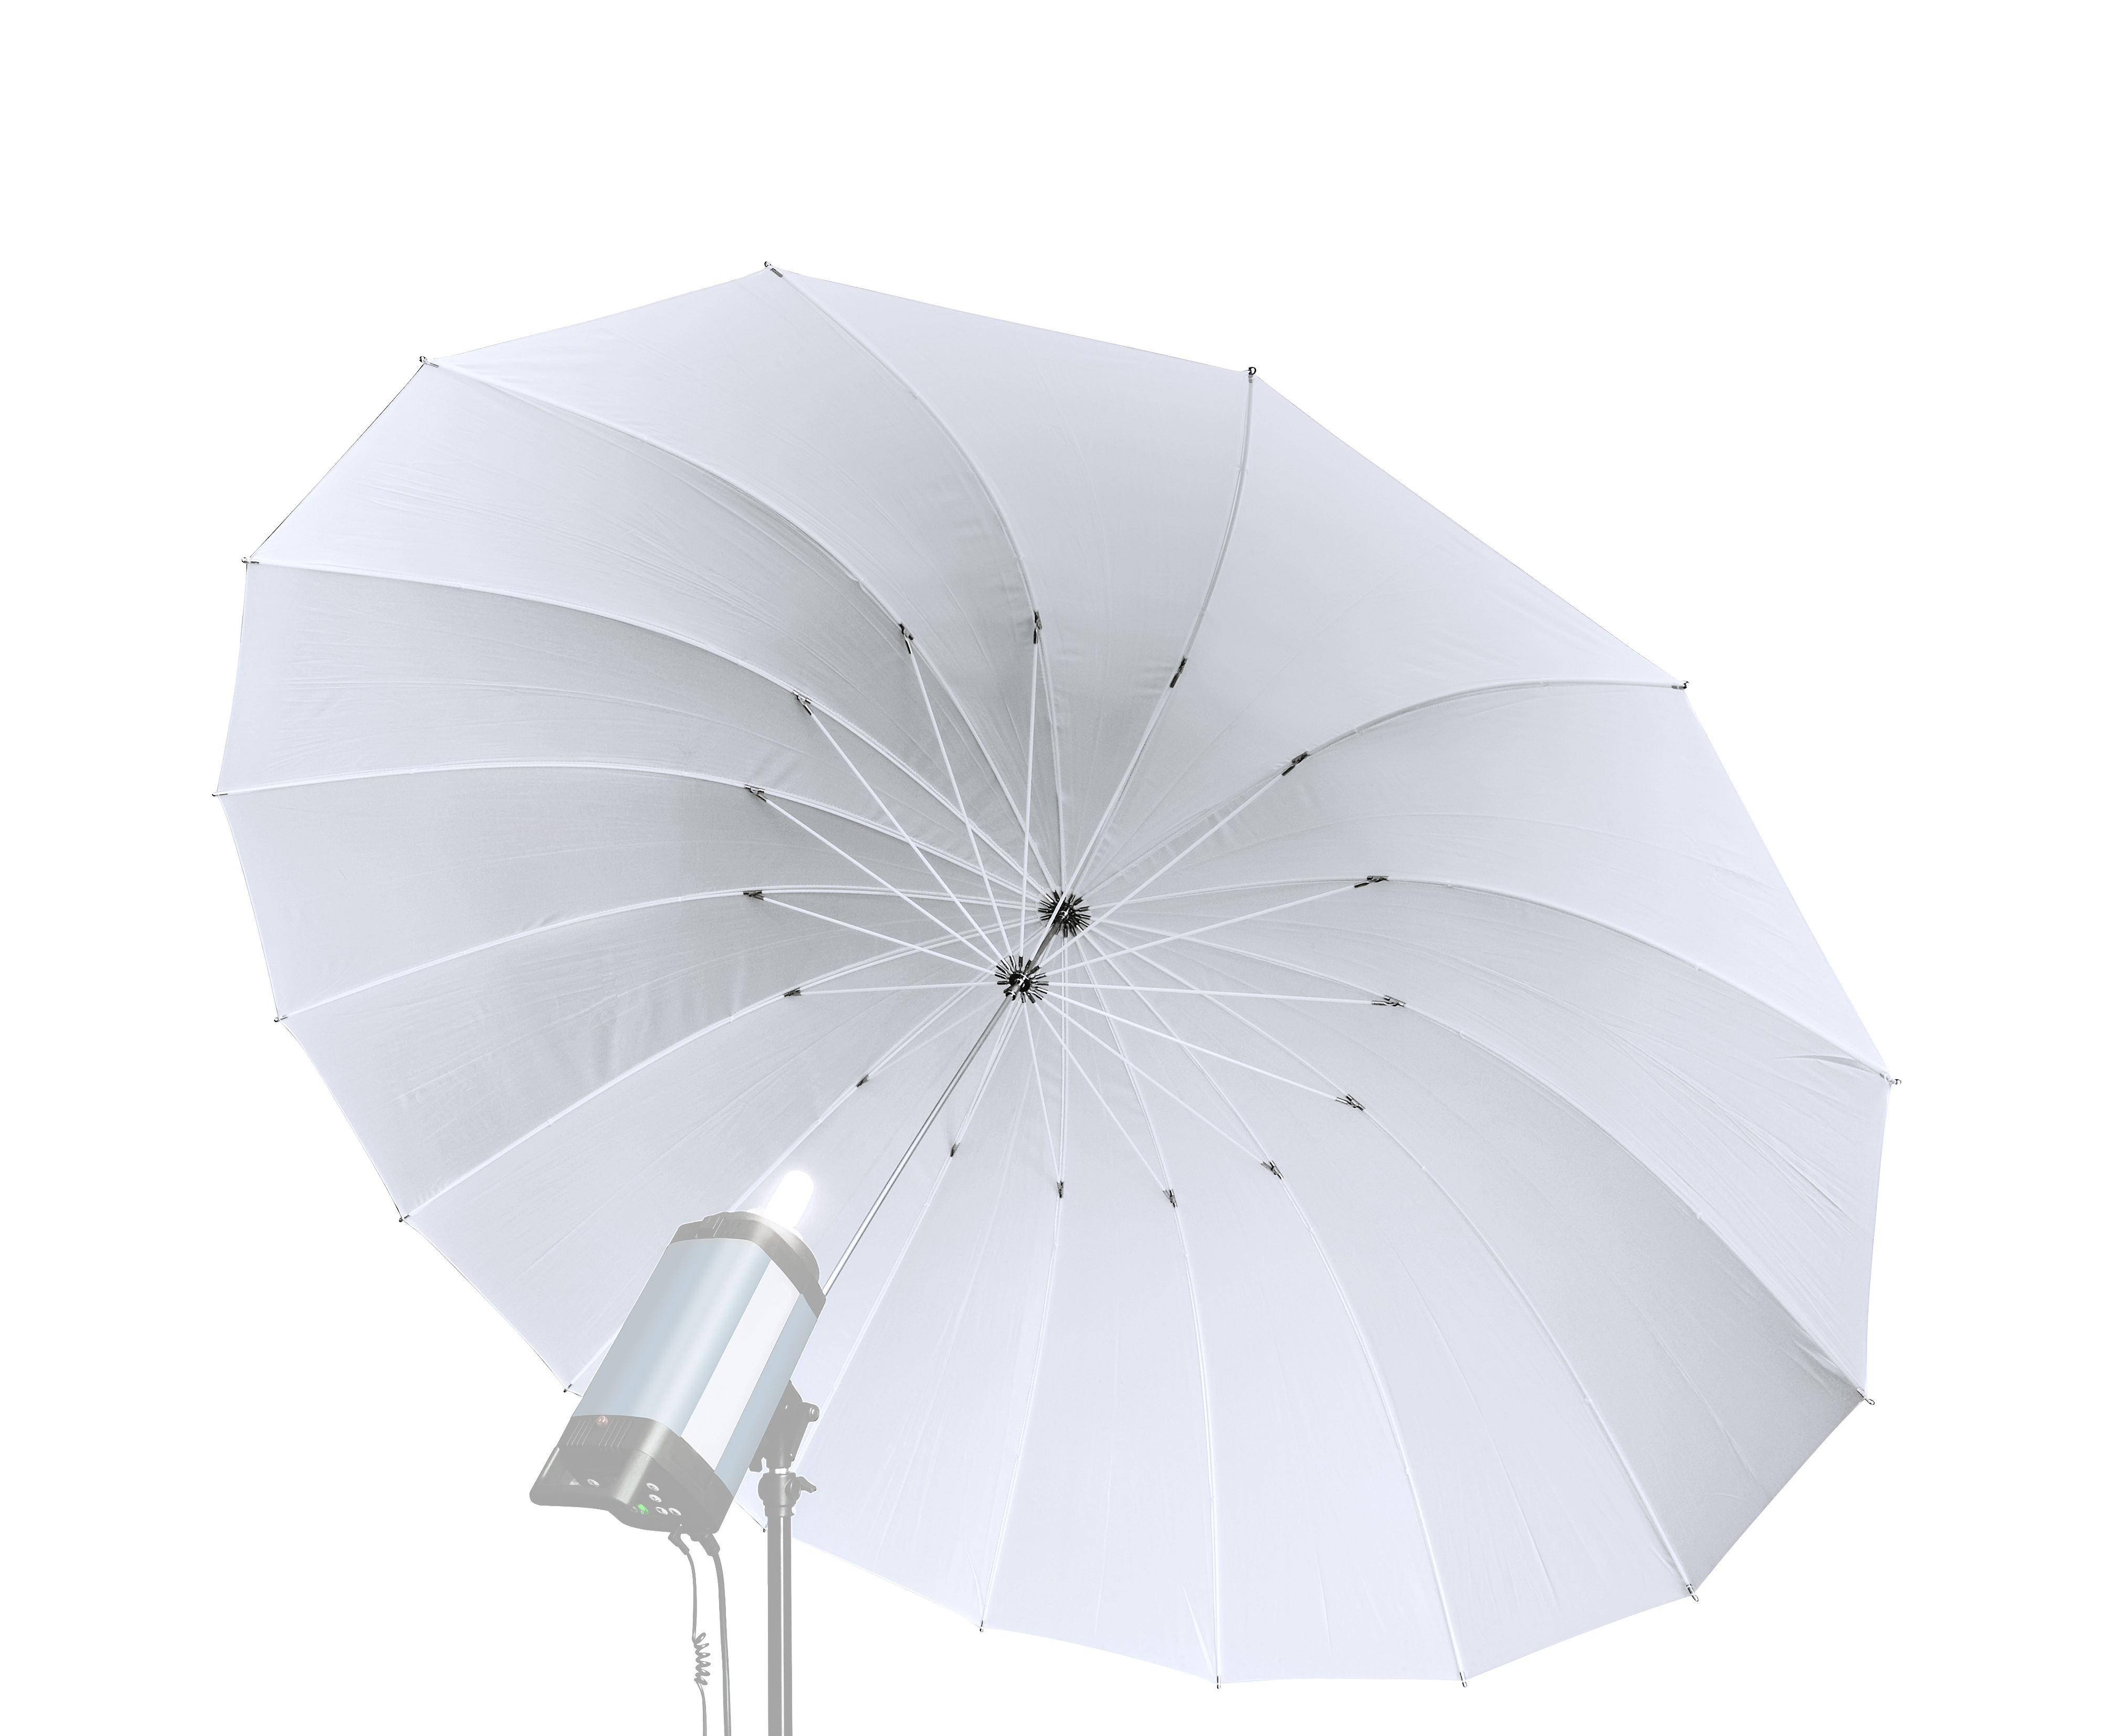 BRESSER SM-08 Jumbo Parapluie translucide blanc 162 cm